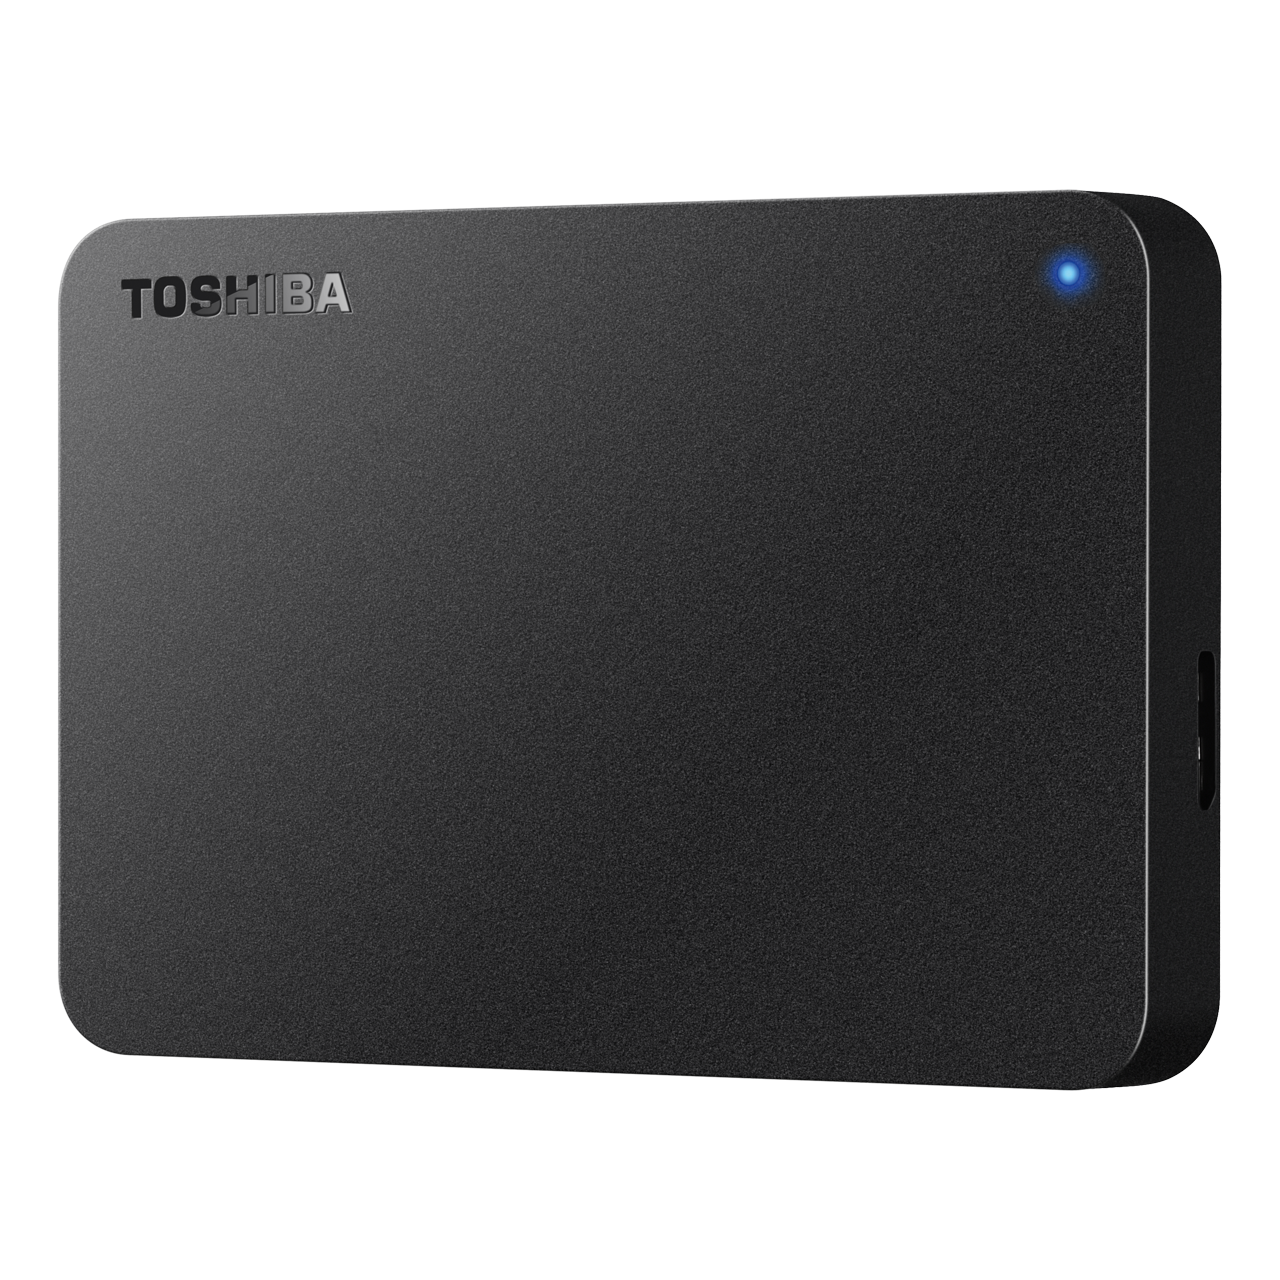 TOSHIBA ポータブルHDD HD-TPA4U3-B 未使用